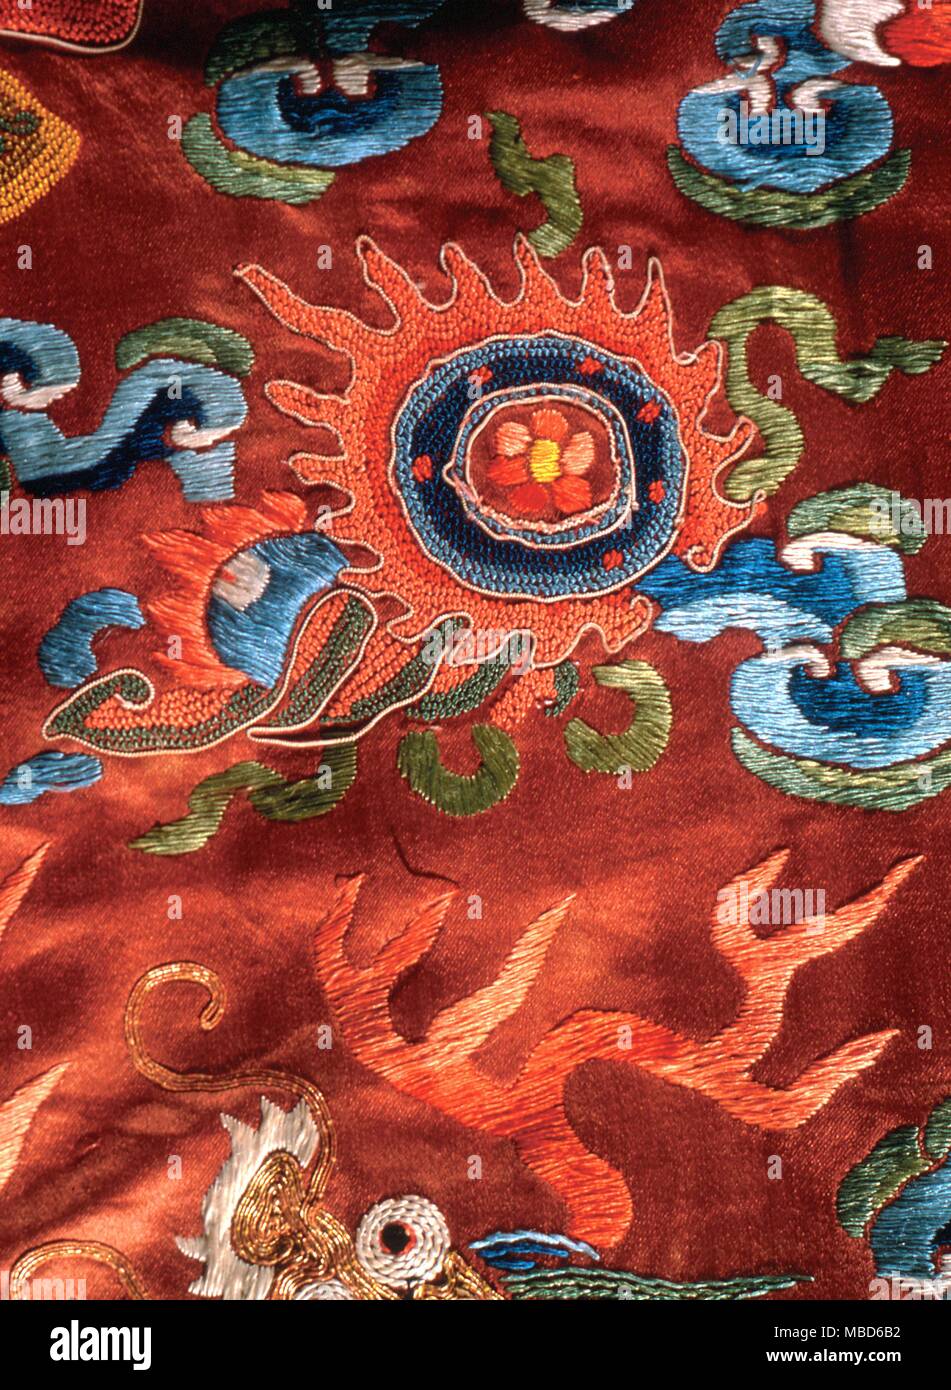 Das Symbol der flammenden Pearl ist eine der alten Symbole der chinesischen Mythologie, die von buddhistischen Symbolisten. Manche sehen es als ein Symbol des Geistes innerhalb der astralen Körper. 18. jahrhundert Chinesisch - © / Charles Walker Stockfoto